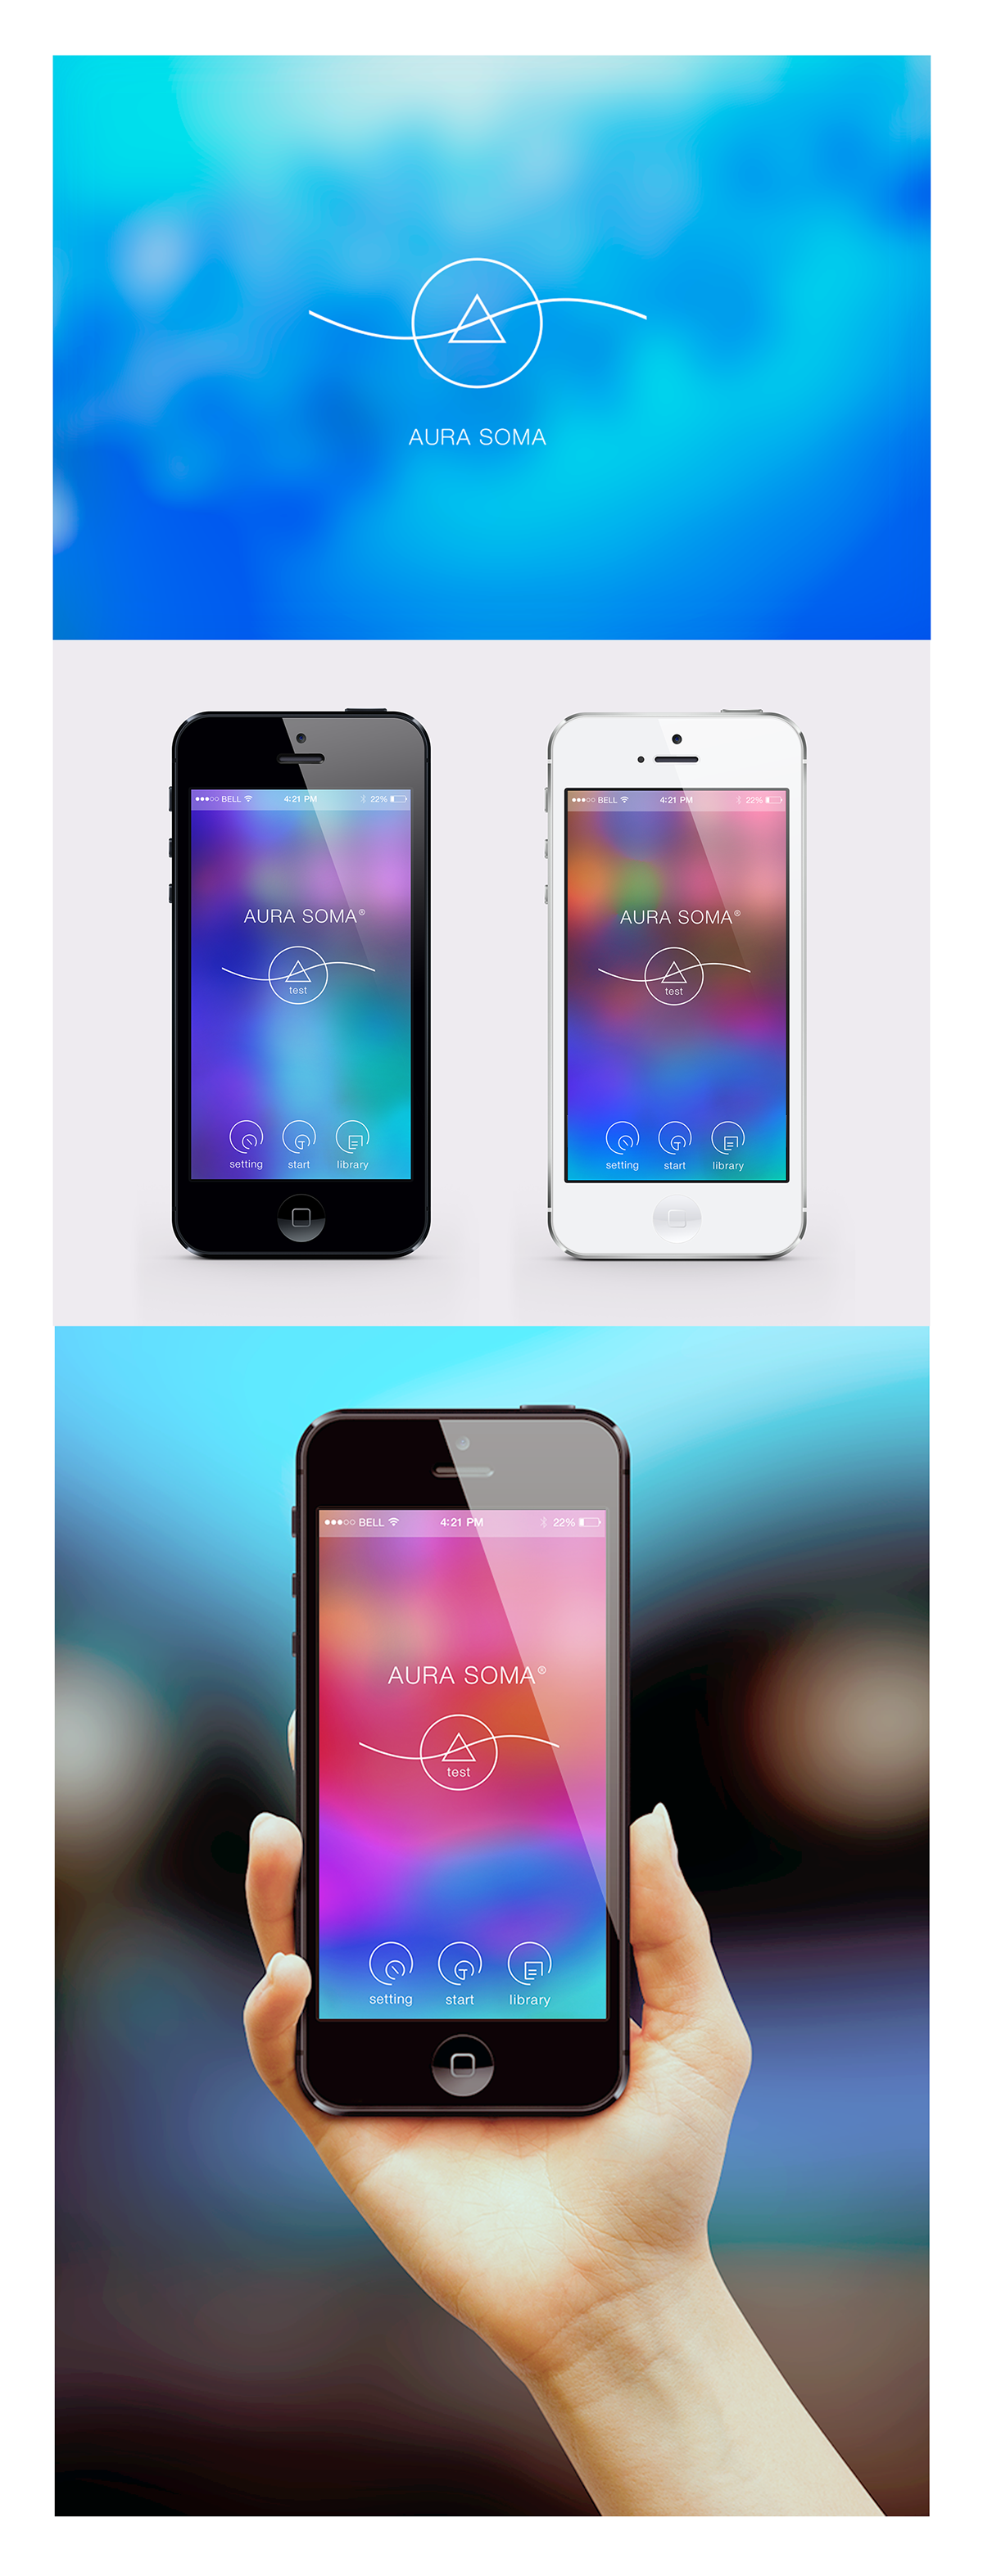 Application Design icons logo concept UI  UX ios mobile interface design